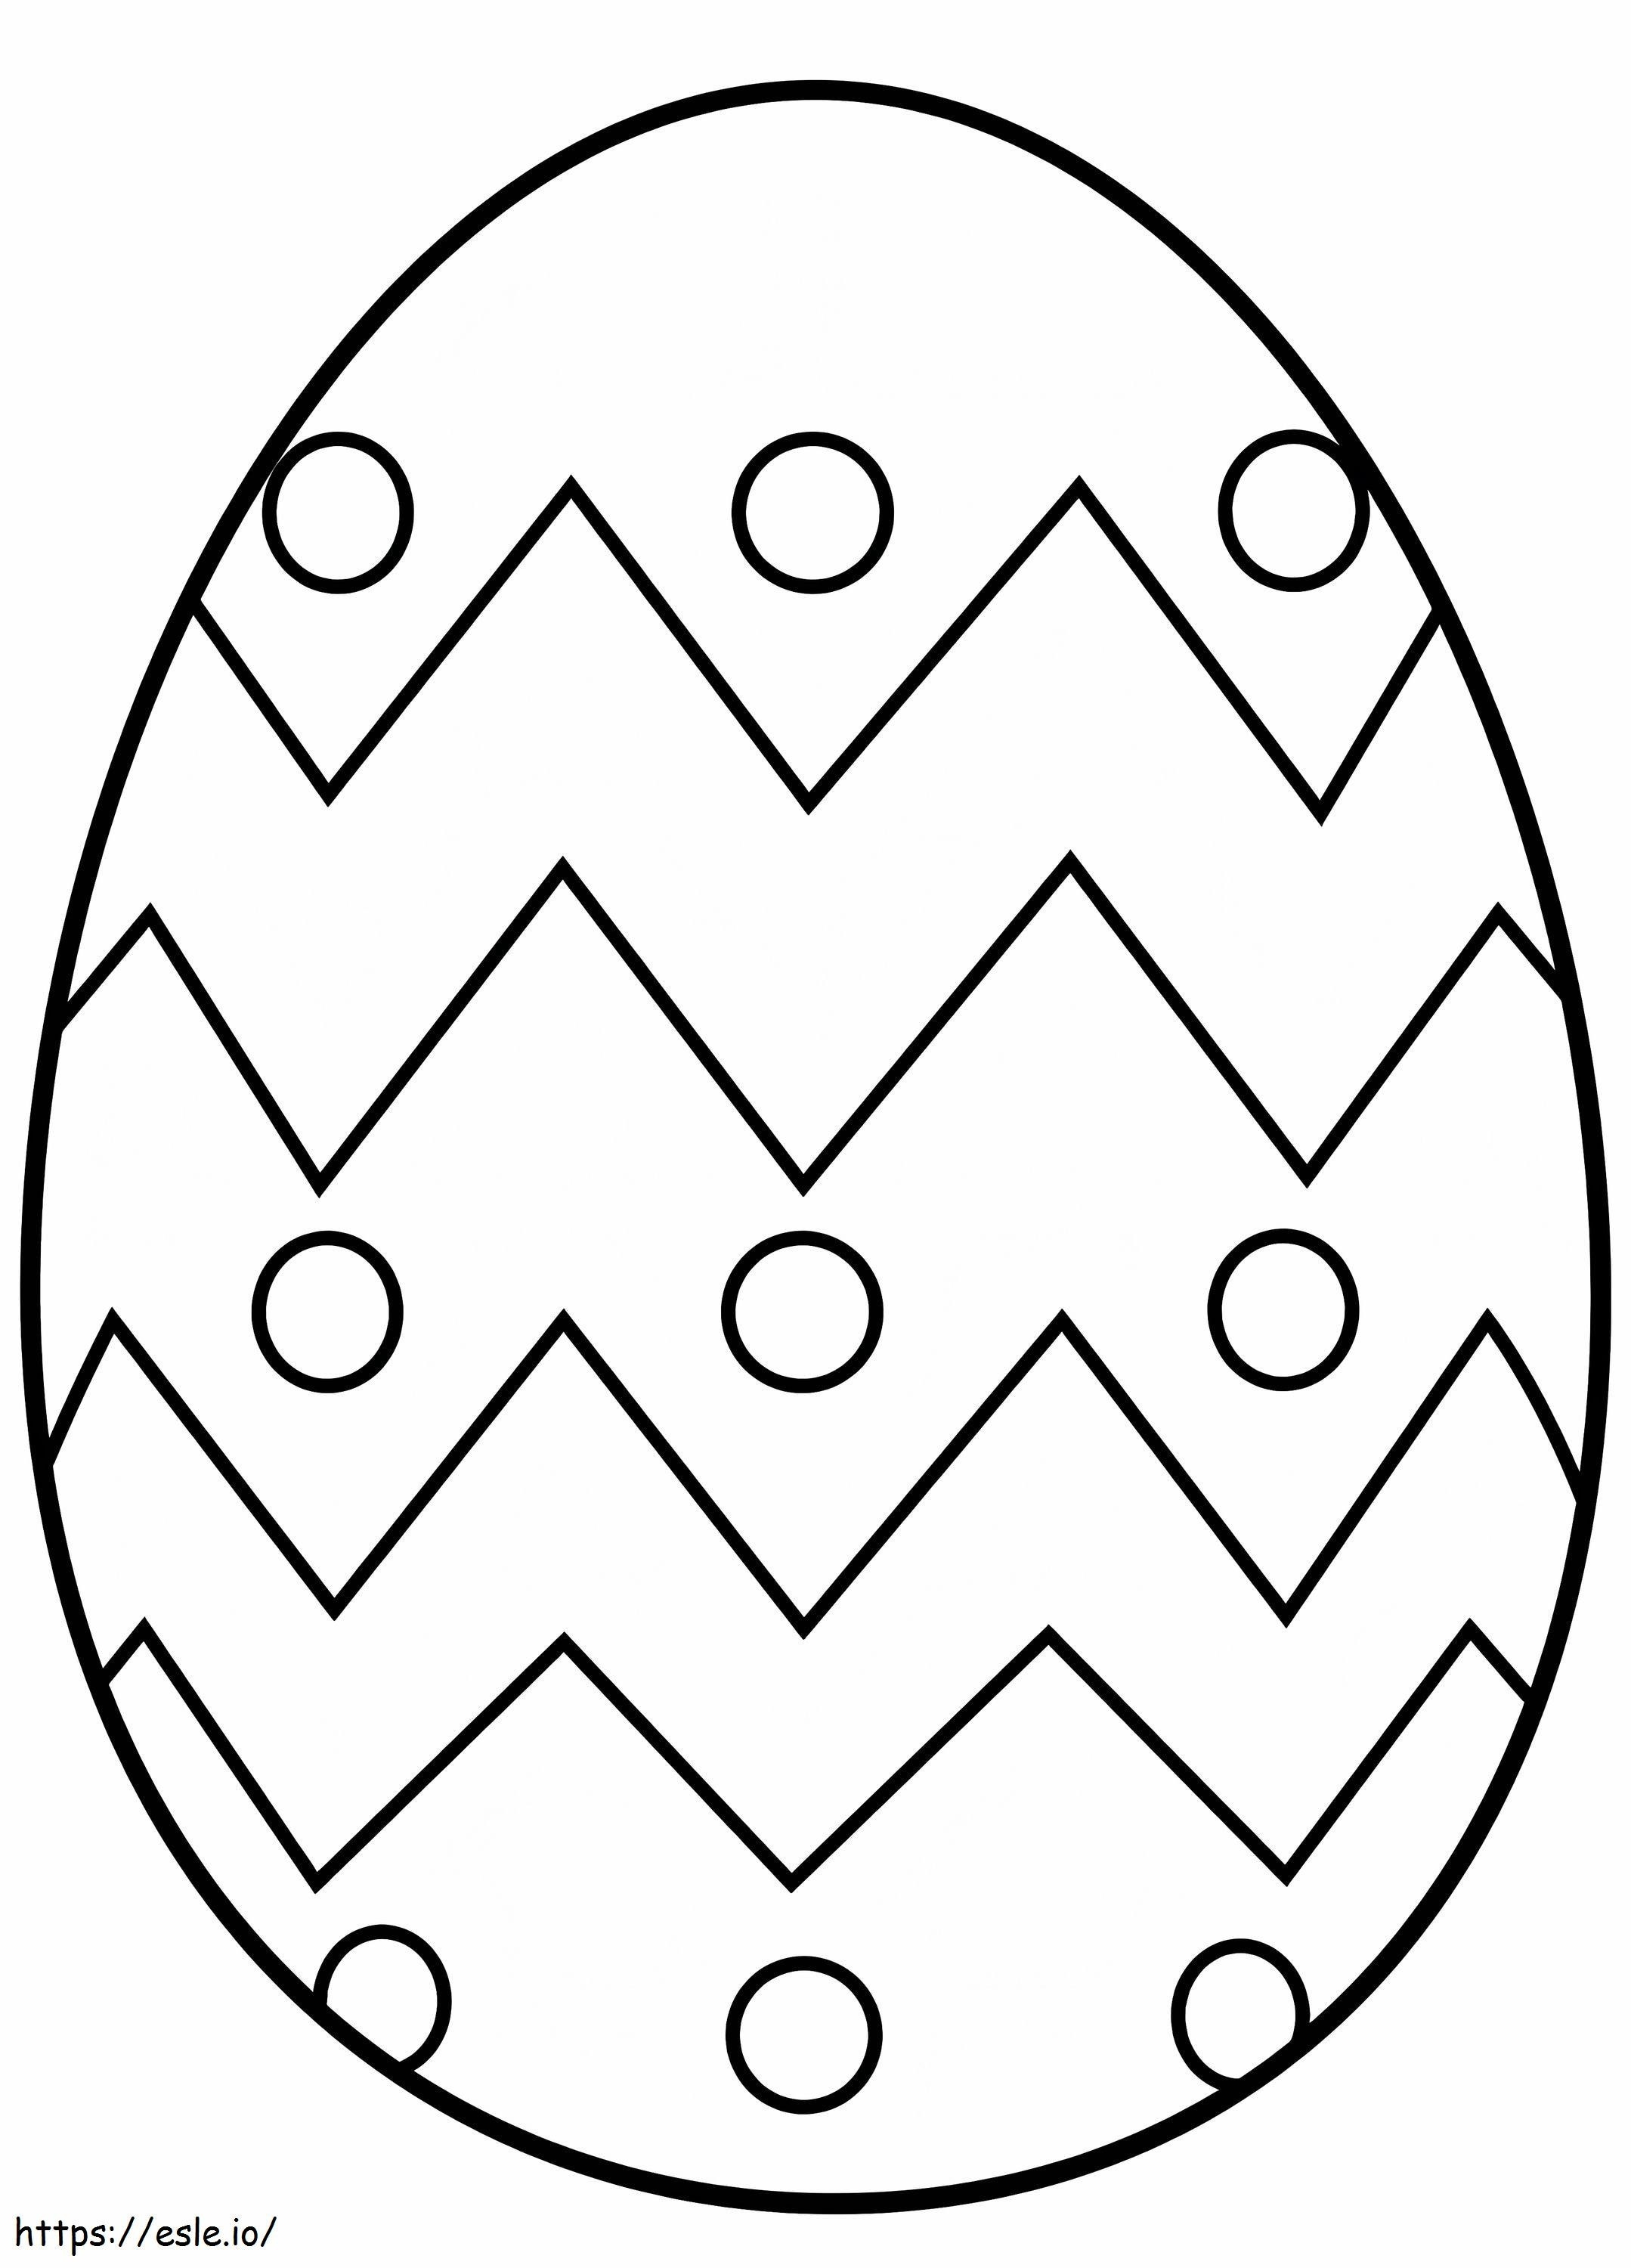 Hartgekochtes Ei ausmalbilder